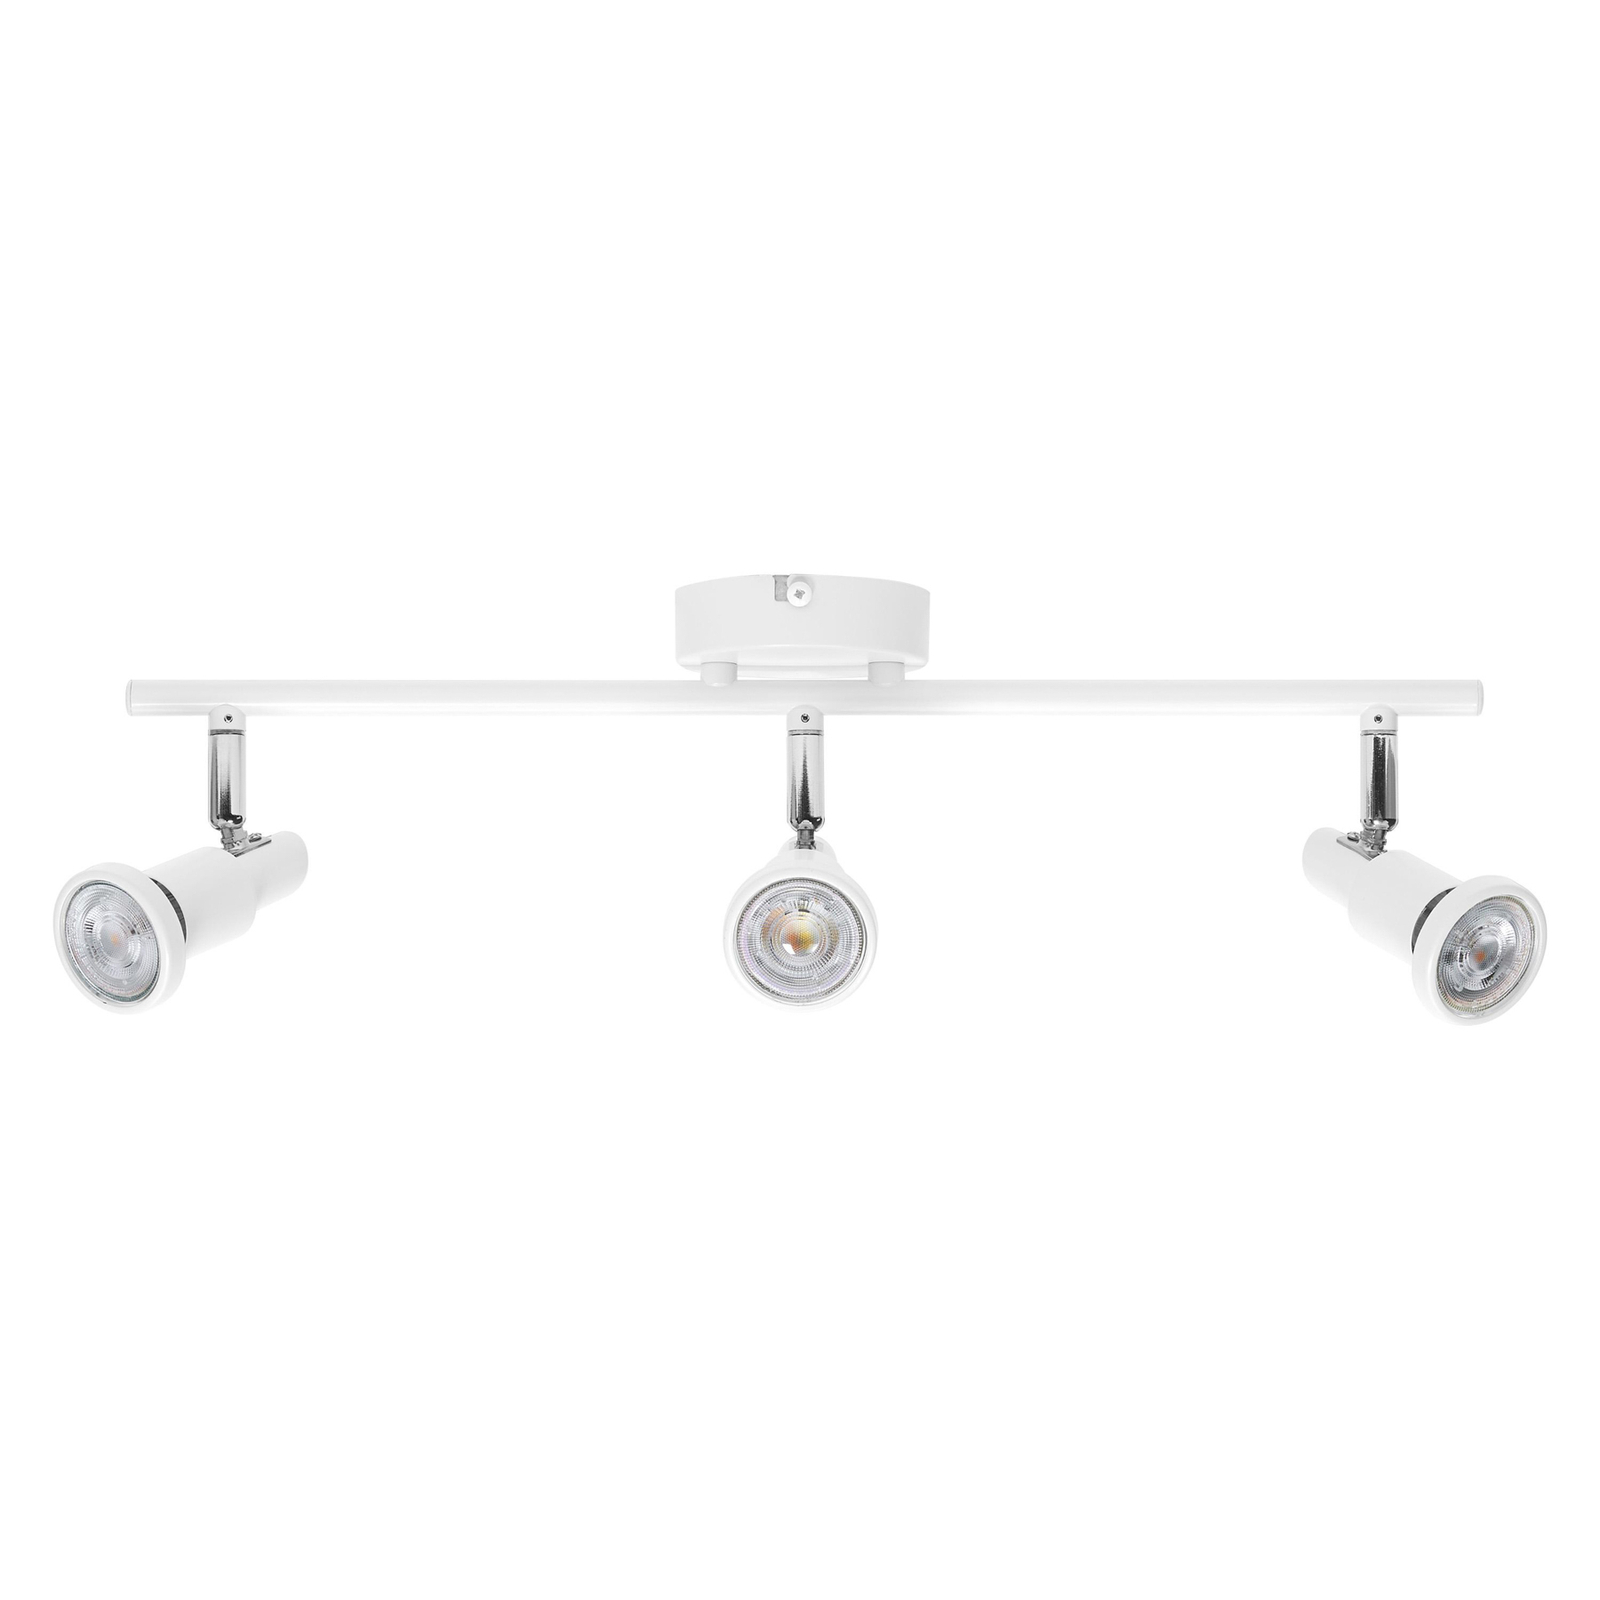 LEDVANCE LED stropní reflektor GU10, třížárovkový, bílý